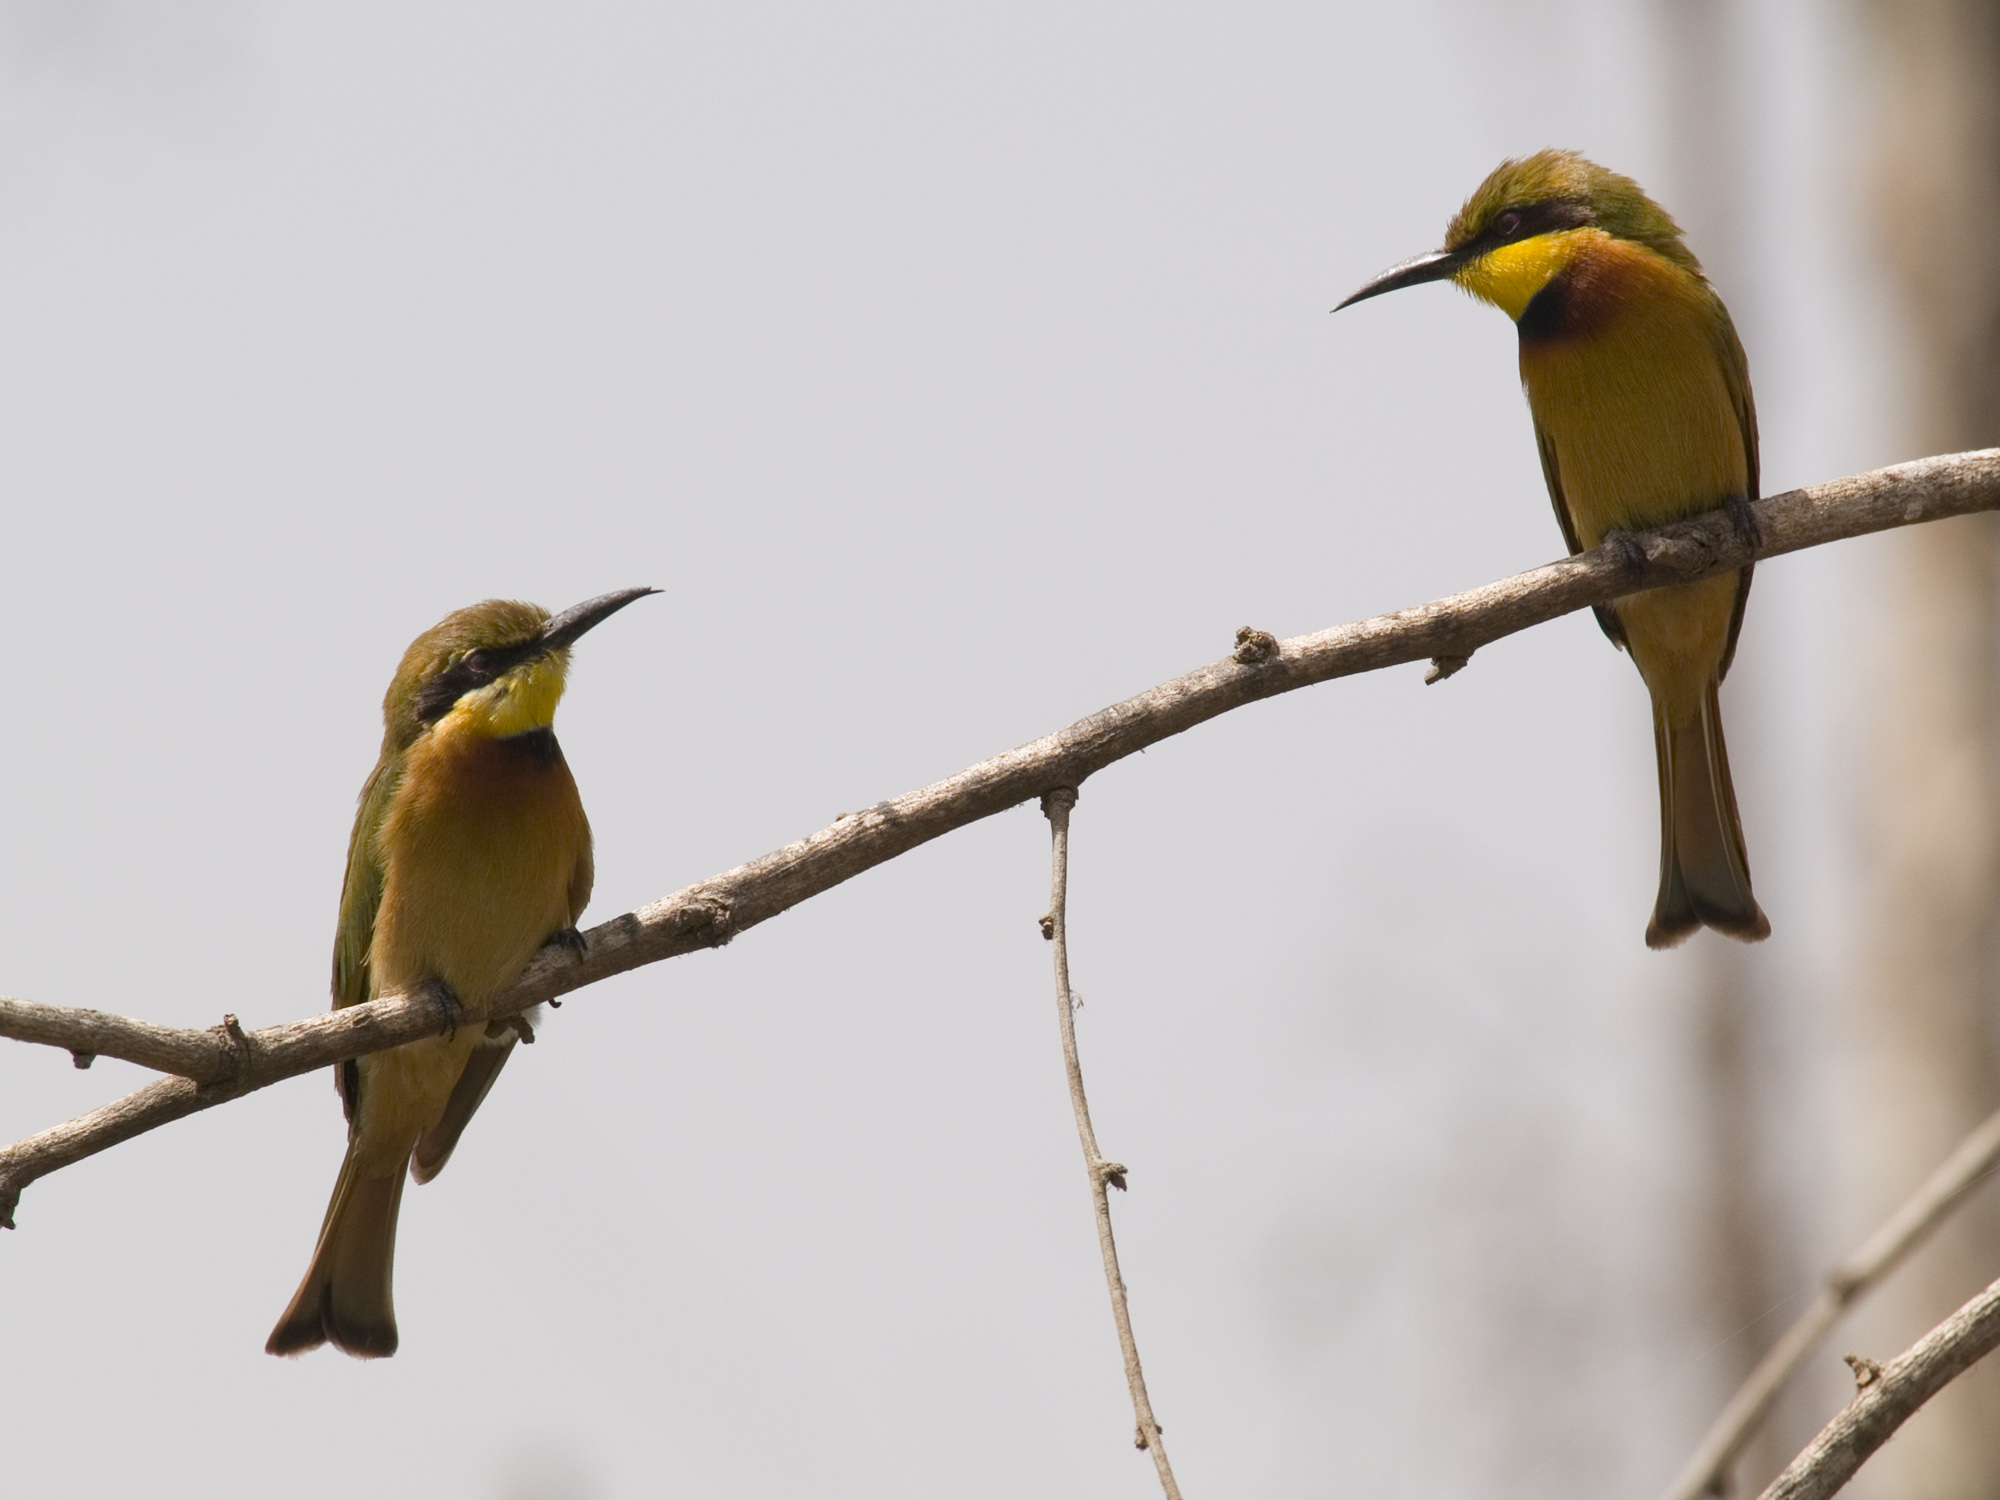 File:Merops pusillus -Little Bee-eater -two on branch.jpg ...